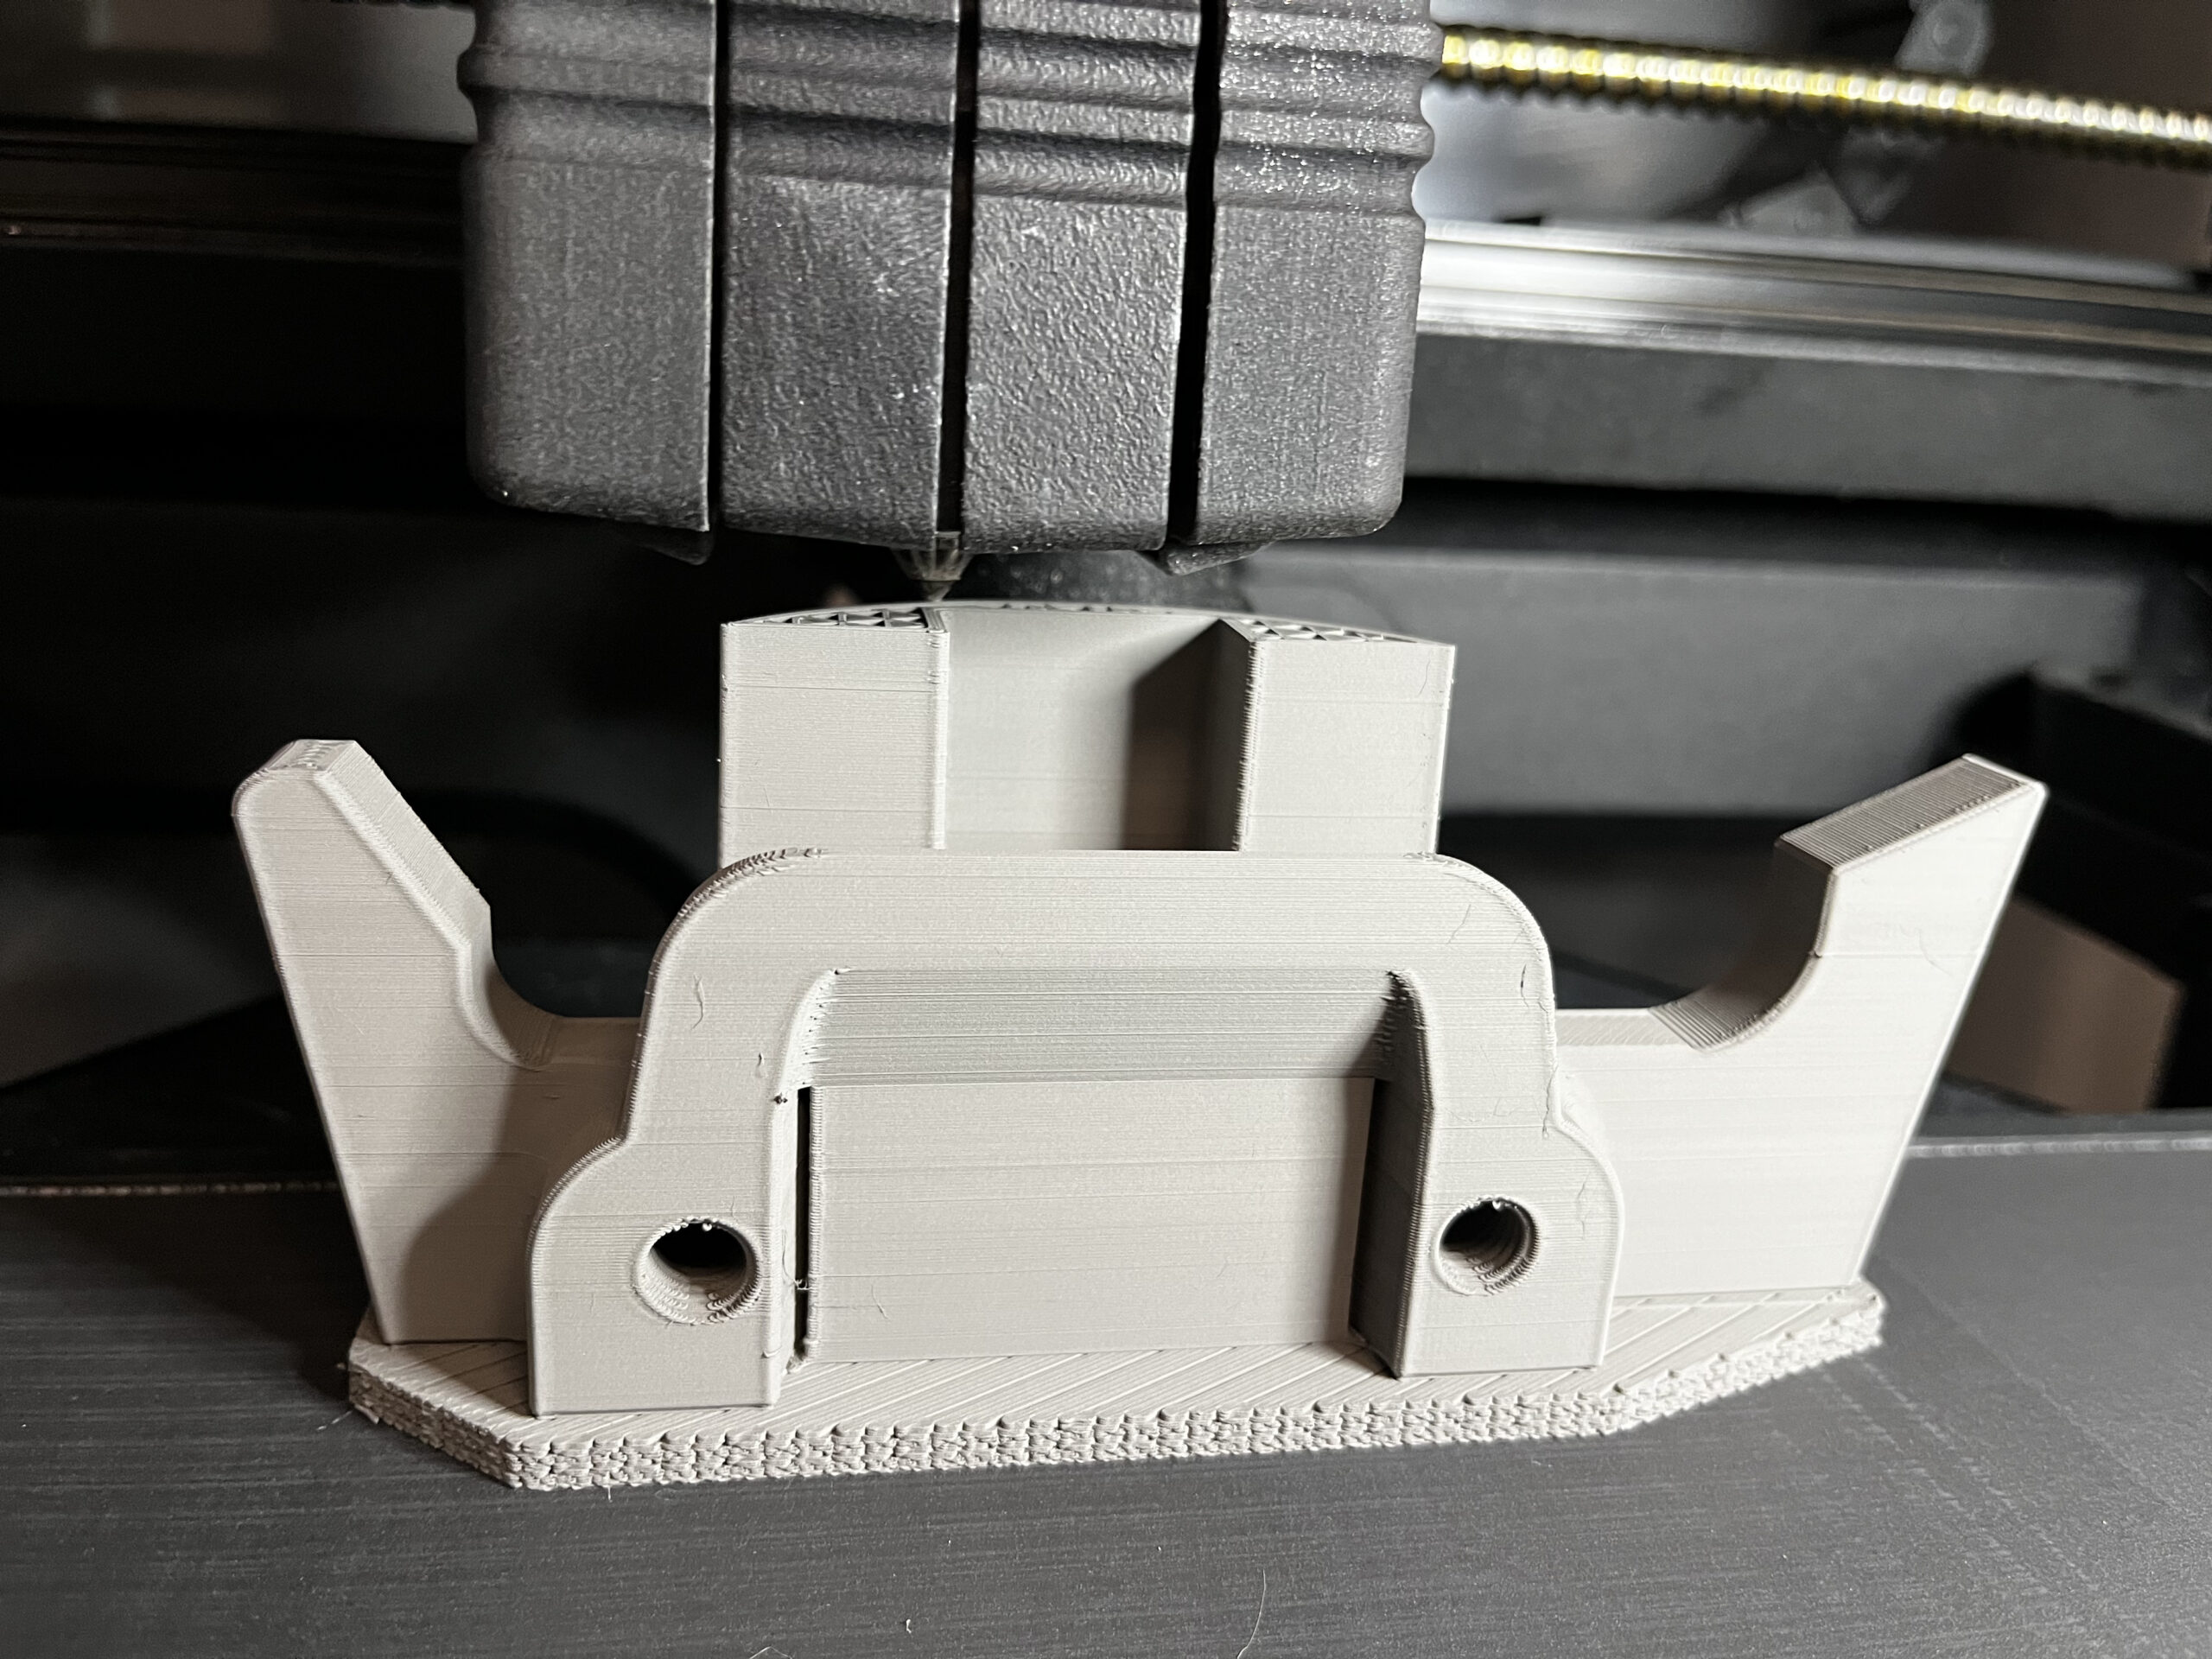 A 3D printer fabricating metal.